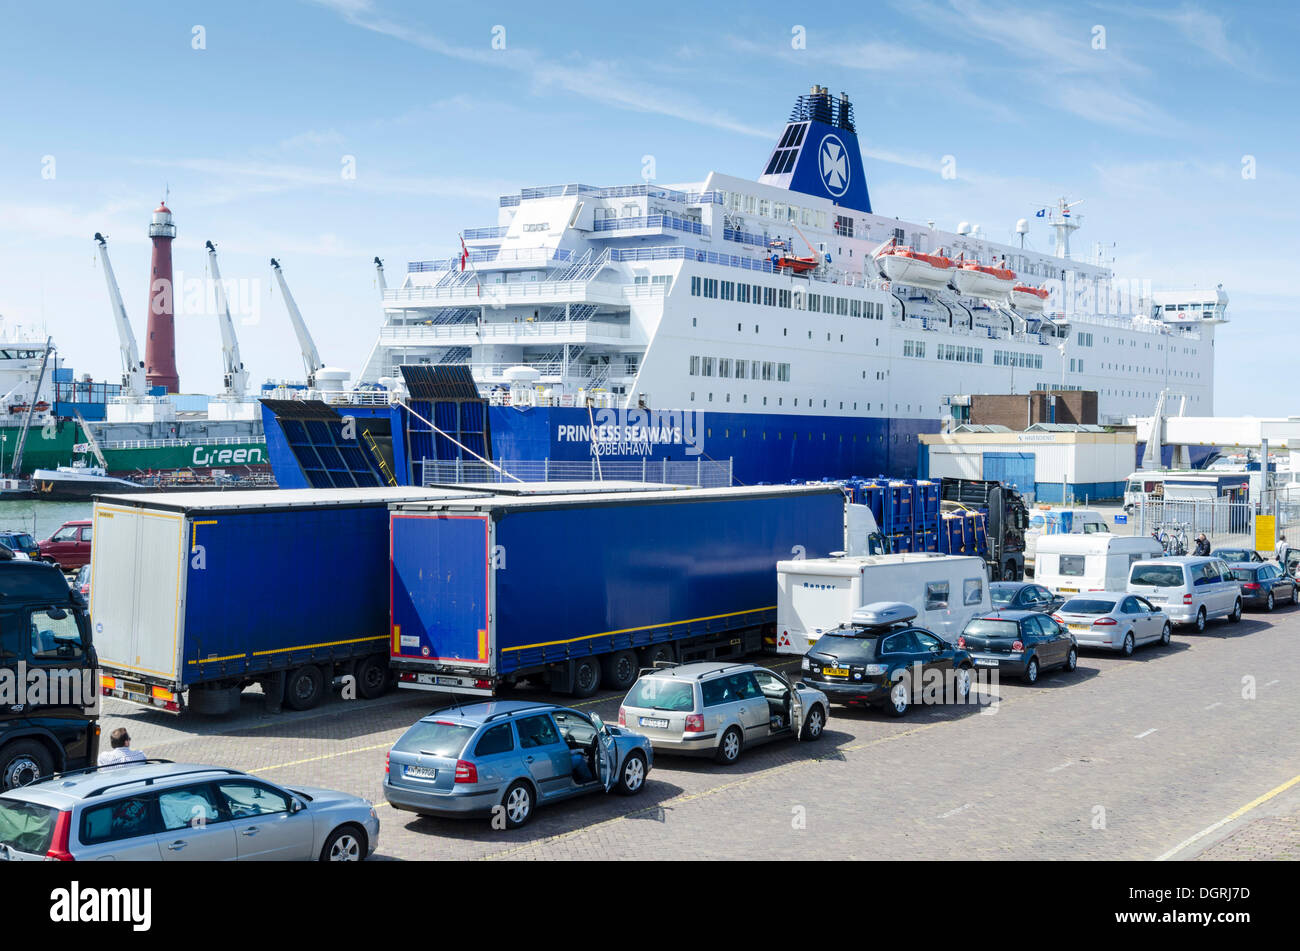 Les voitures et les camions sont alignés au port de ferry de Ijmuiden, Princess Seaways ferry, Hollande du Nord, les Pays-Bas, Europe Banque D'Images